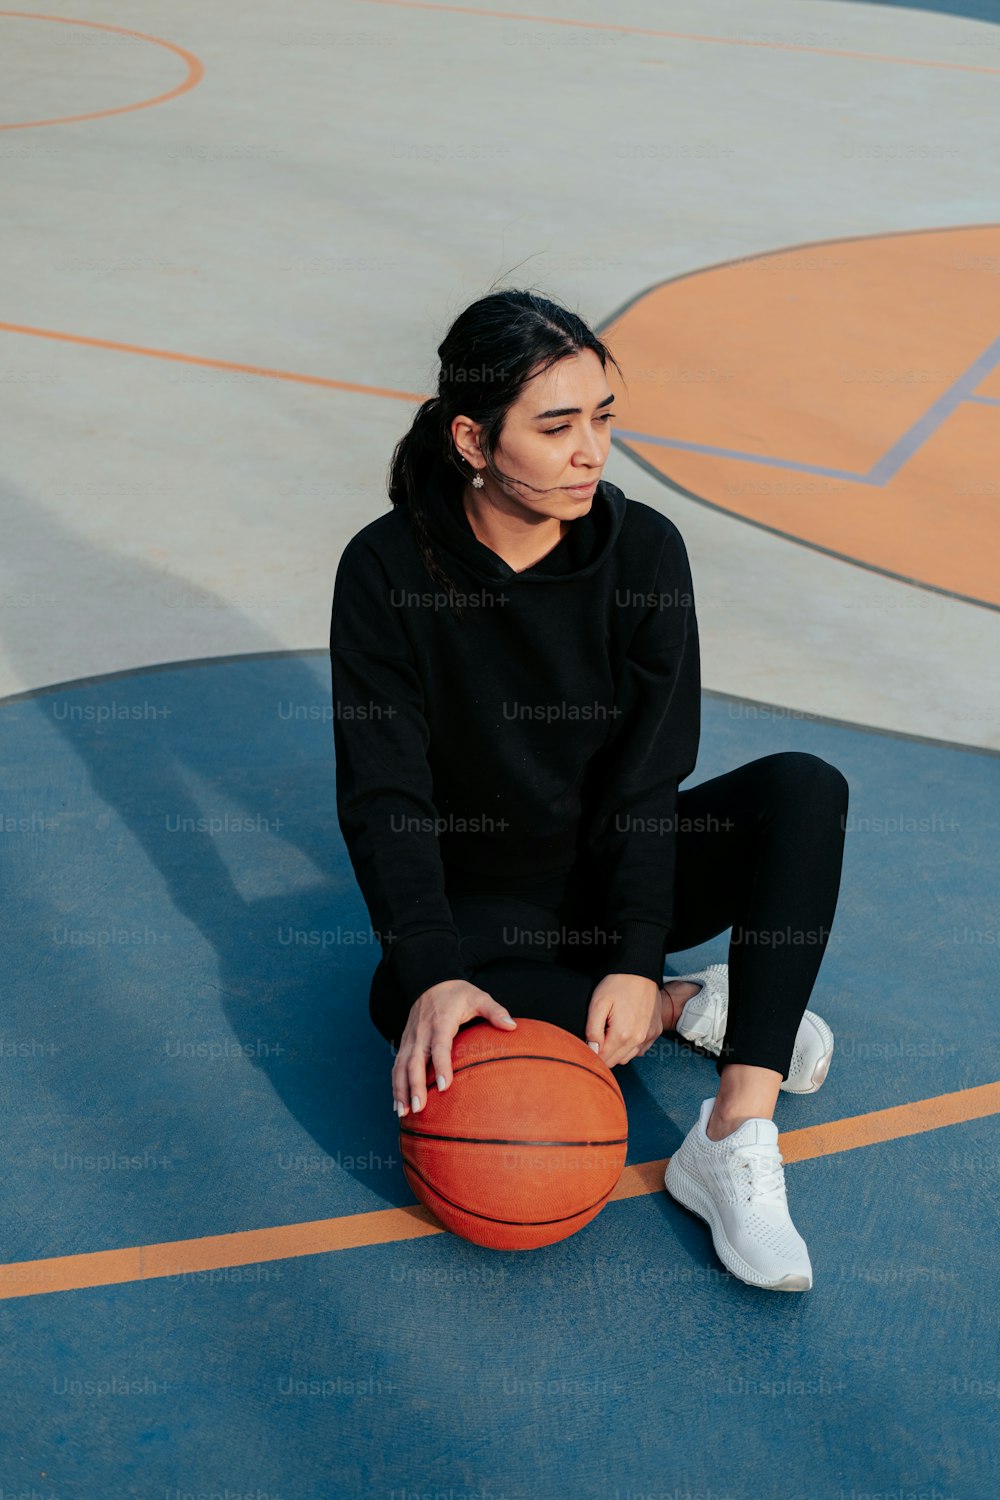 Eine Frau, die auf einem Basketballplatz sitzt und einen Basketball hält